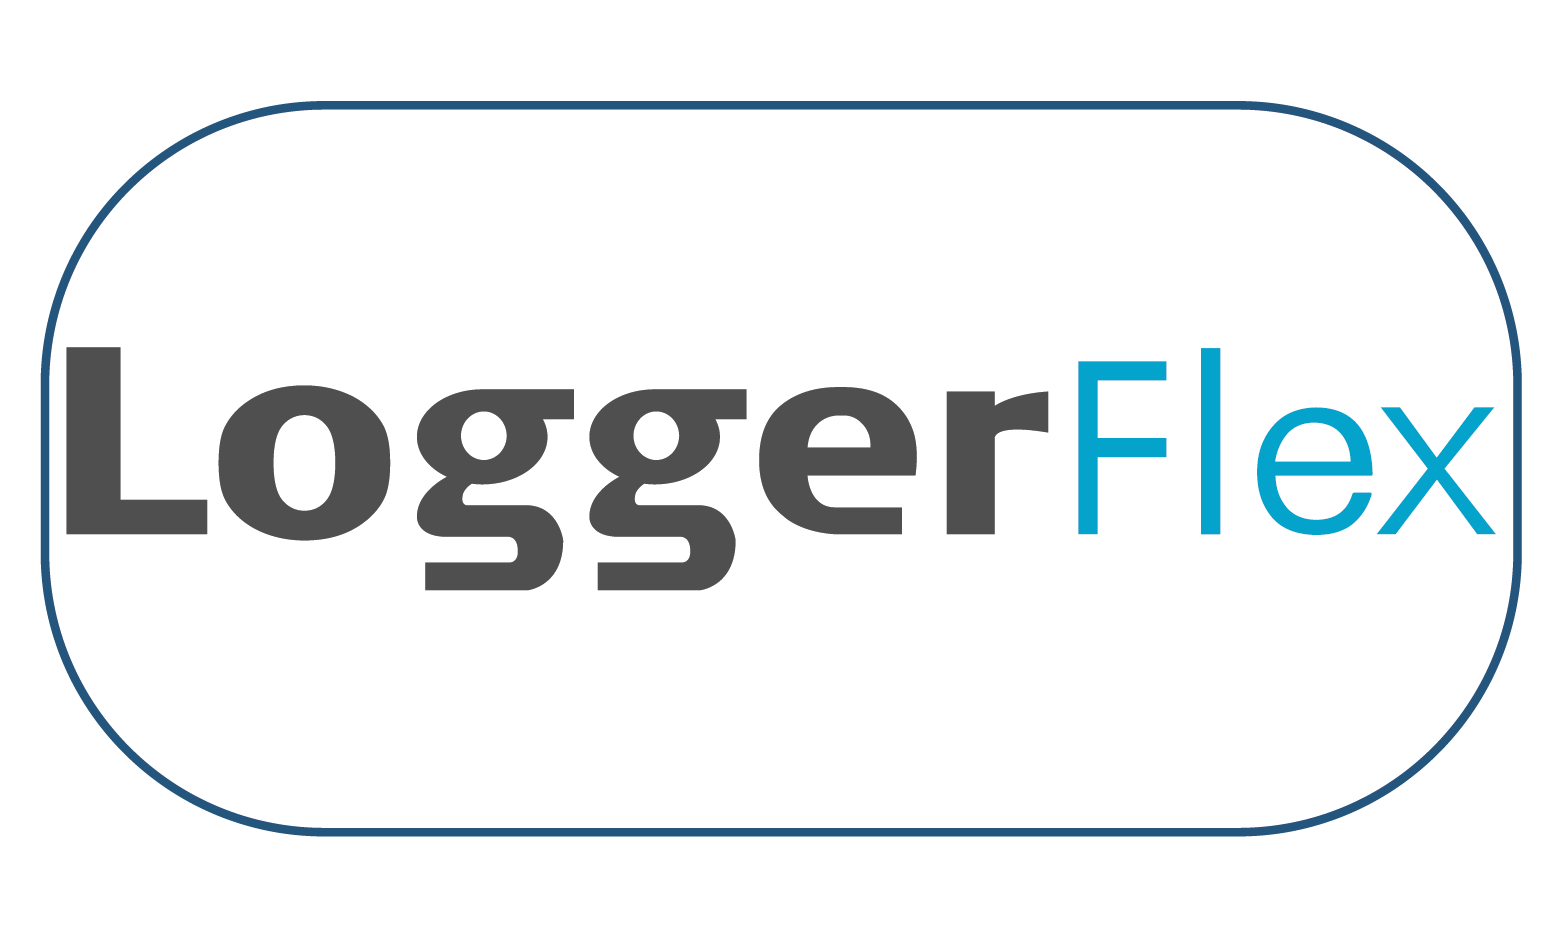 LOGGERFLEX proporciona soluciones de adquisición de datos